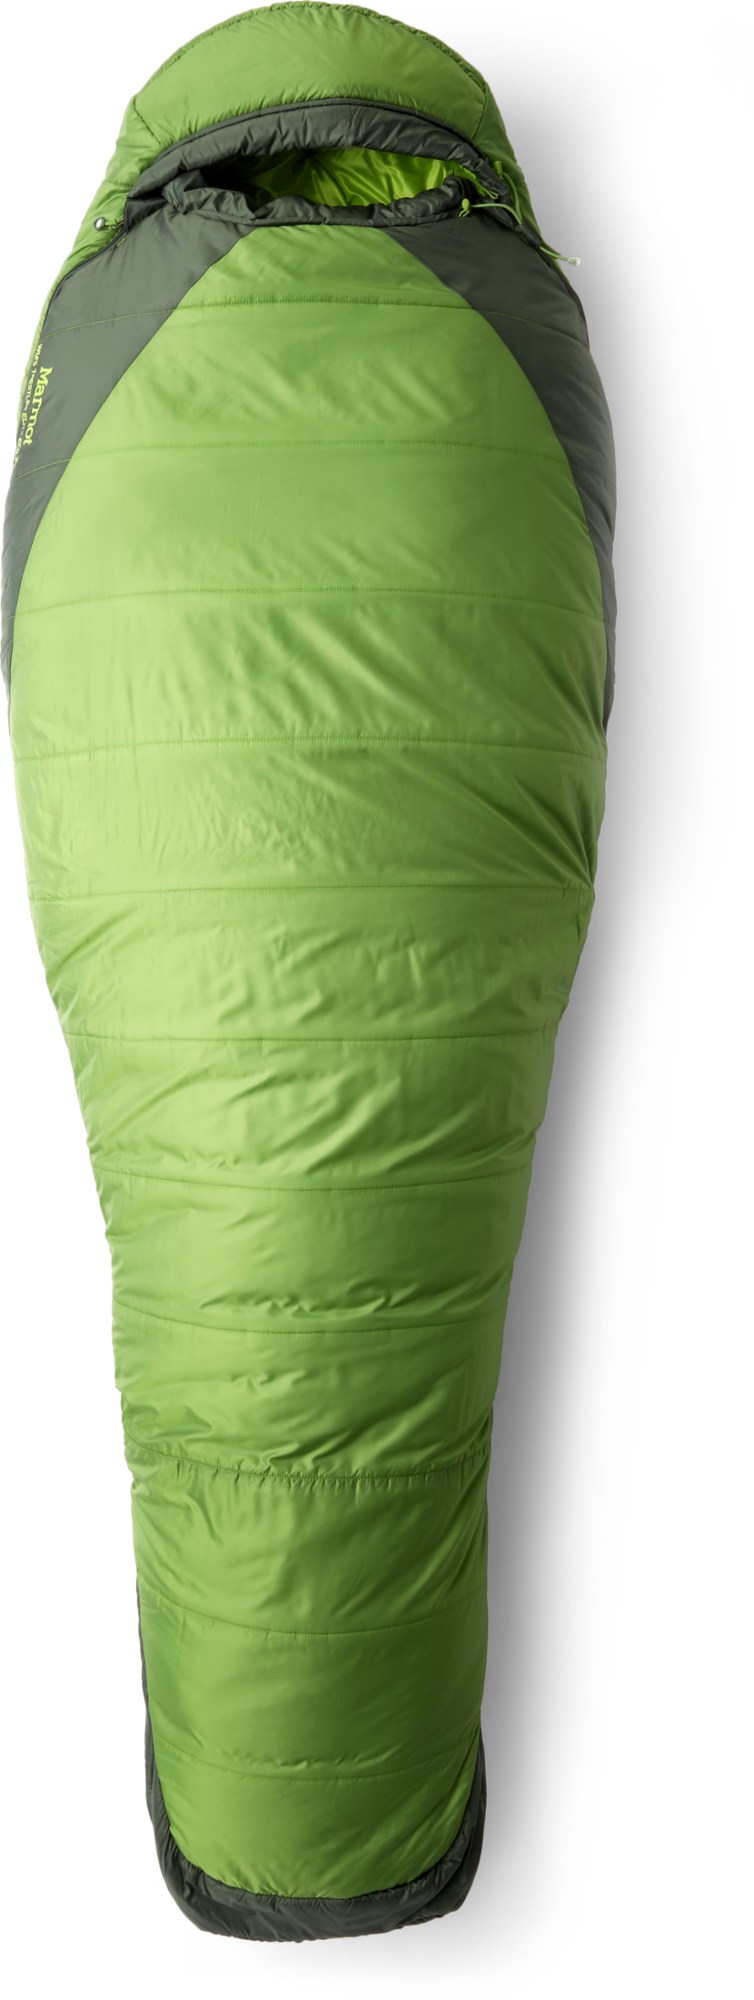 Спальный мешок Trestles Elite Eco 30 - женский Marmot, зеленый